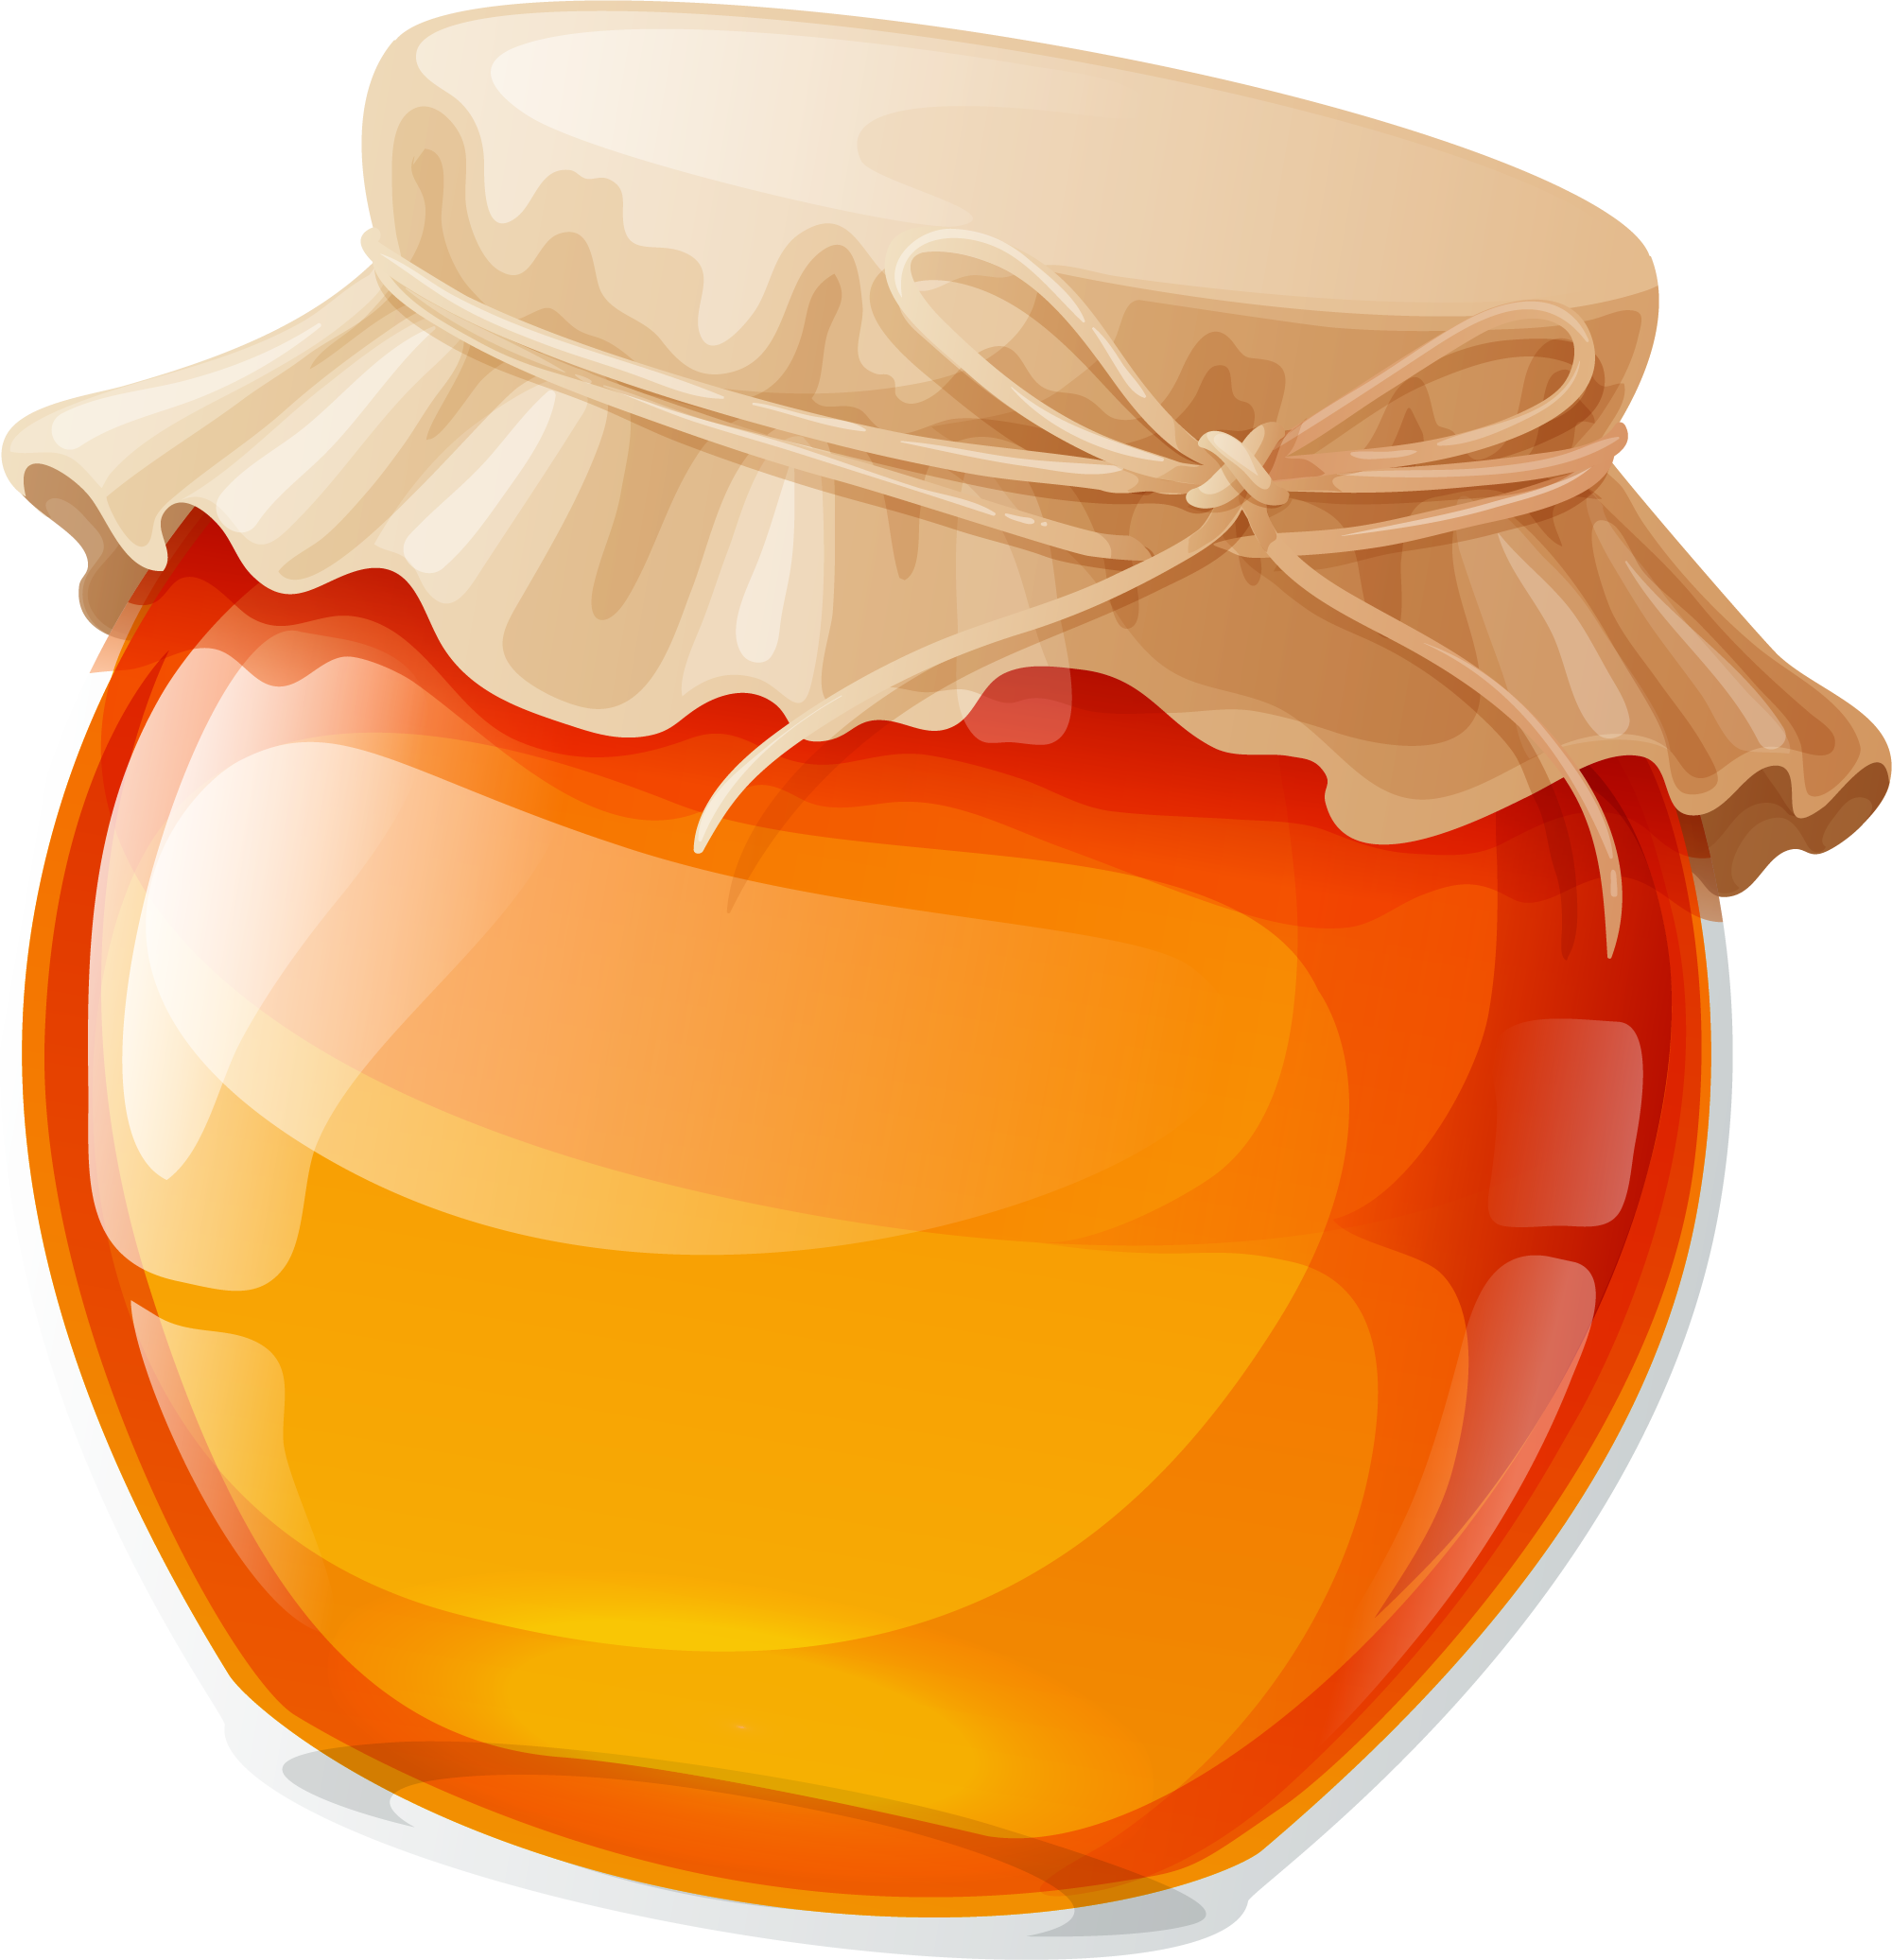 Jam clipart marmalade, Jam marmalade Transparent FREE for